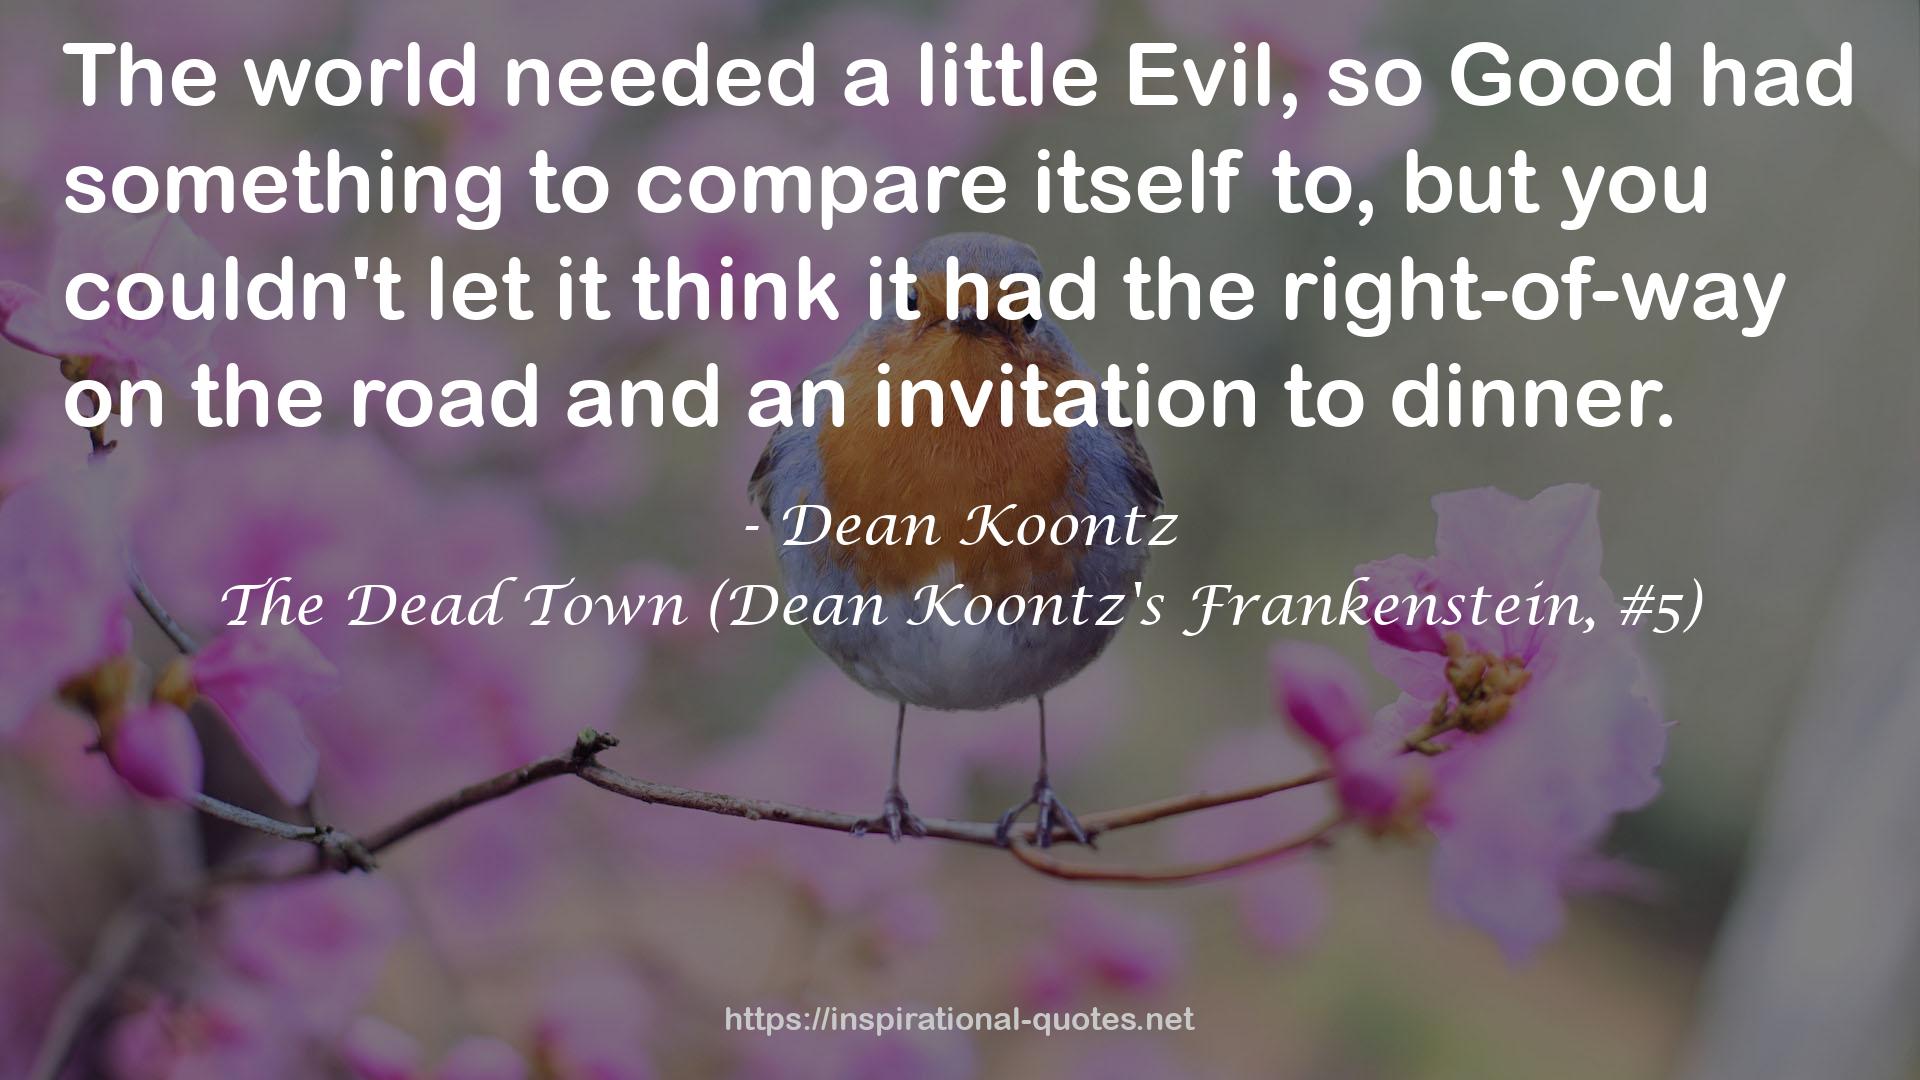 The Dead Town (Dean Koontz's Frankenstein, #5) QUOTES